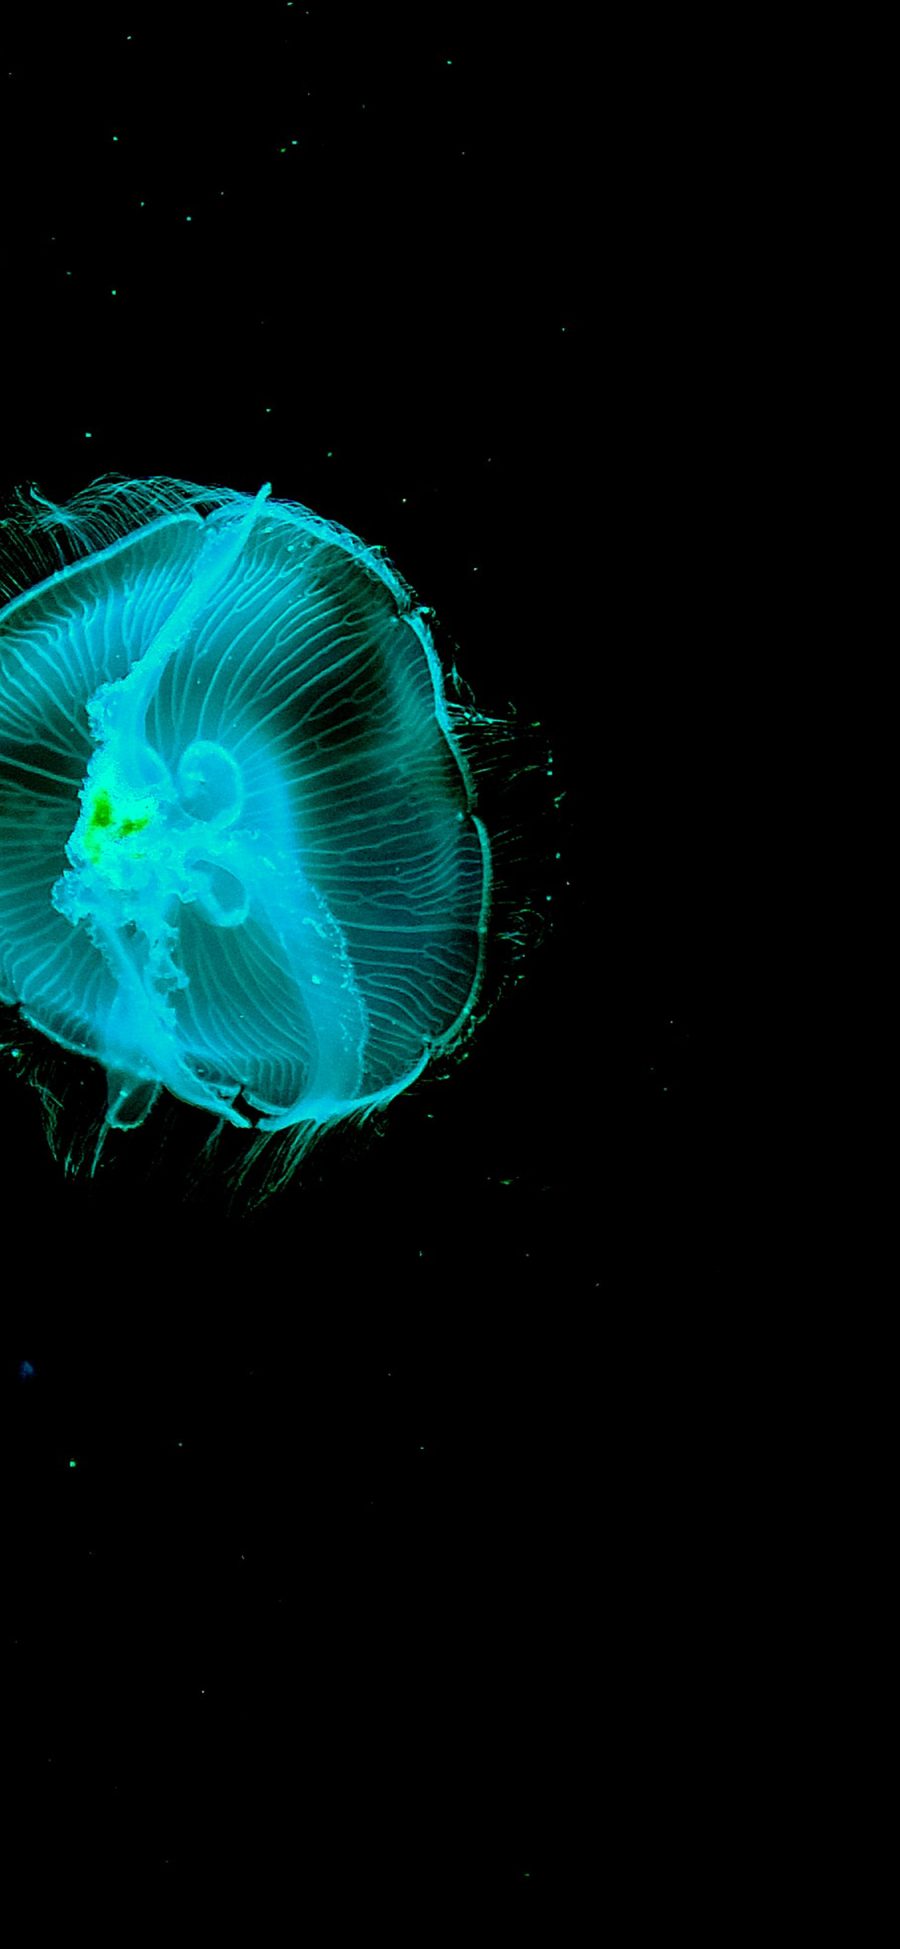 [2436×1125]水母 透明 荧光 浮游 苹果手机壁纸图片